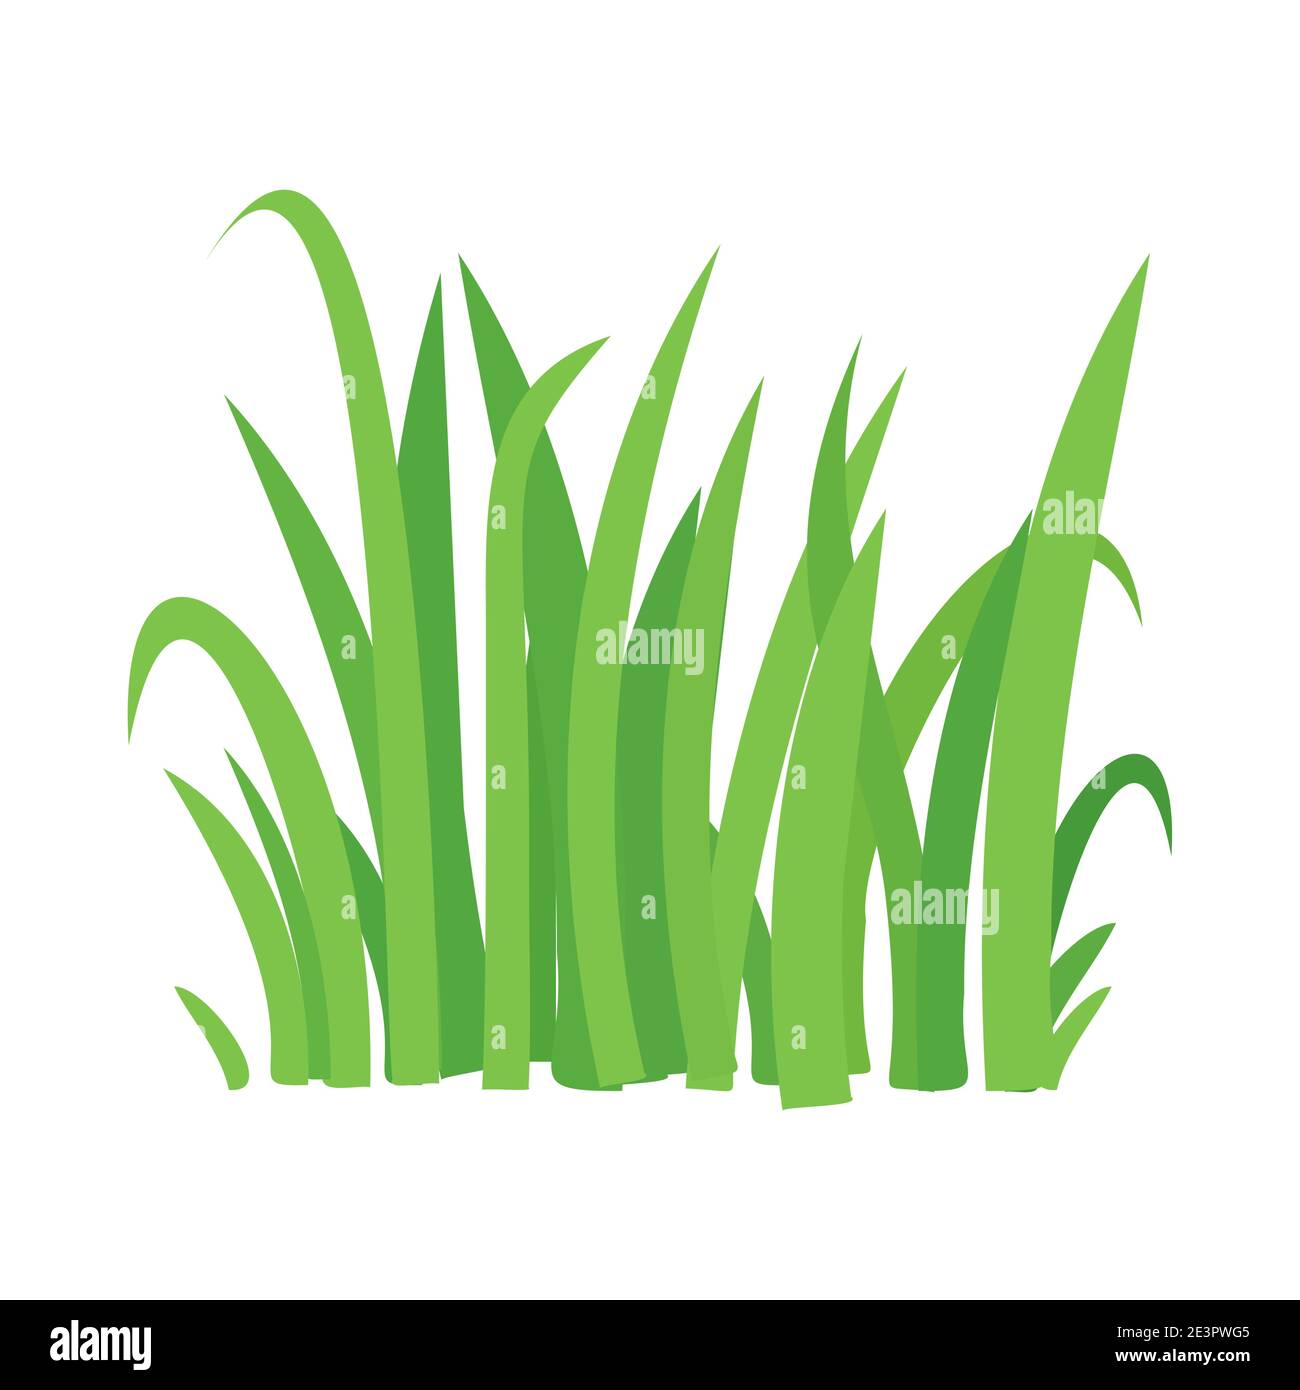 Grass vector cartoon texture. Grass field shape green silhouette plant bush  Stock Vector Image & Art - Alamy